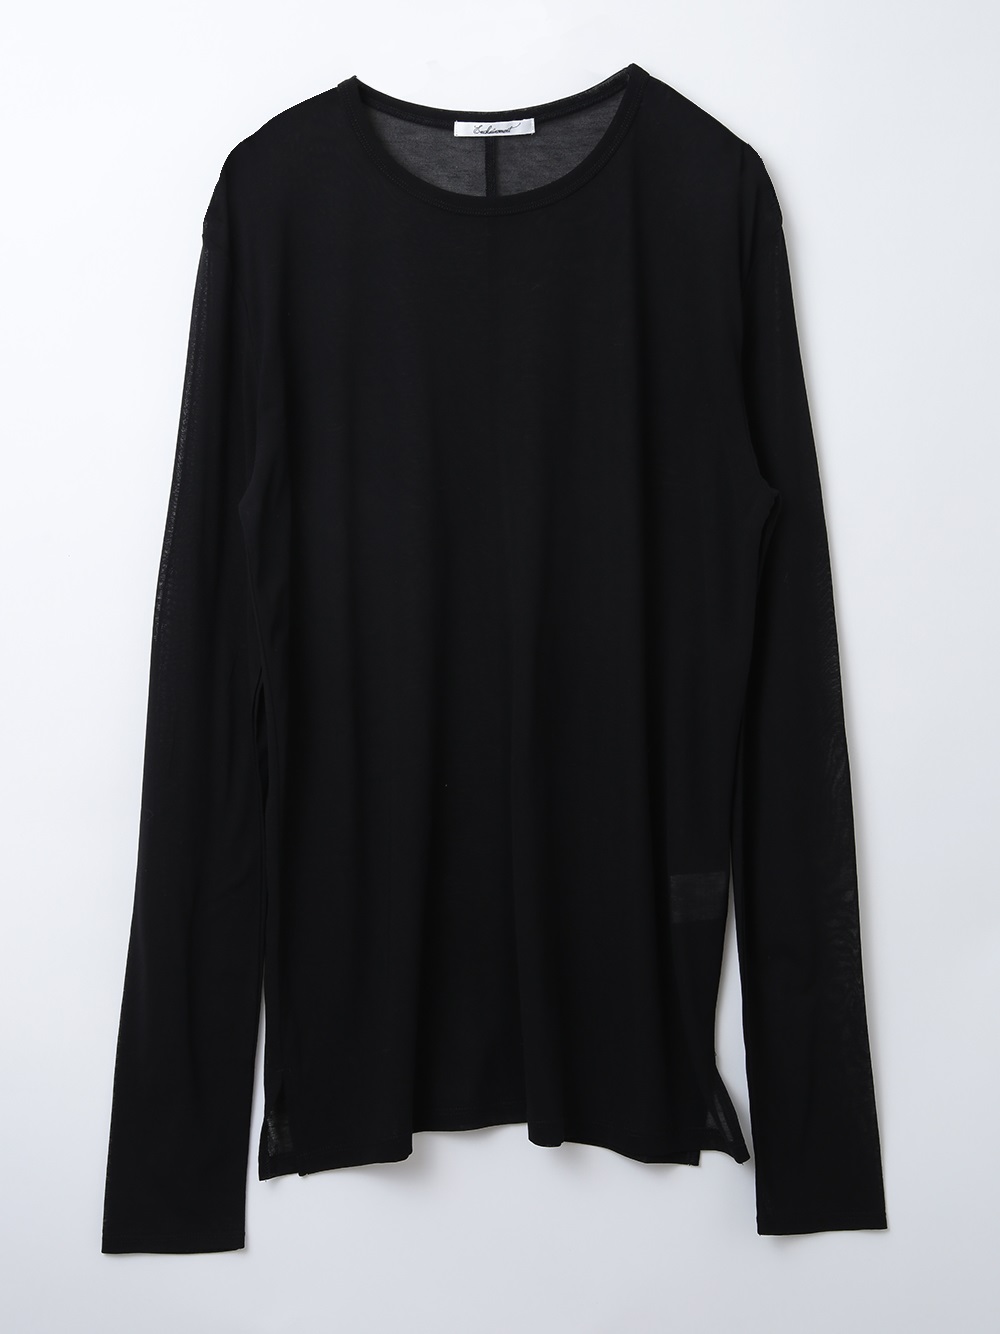 Sheer Jersey Pullover(00ブラック-フリー)